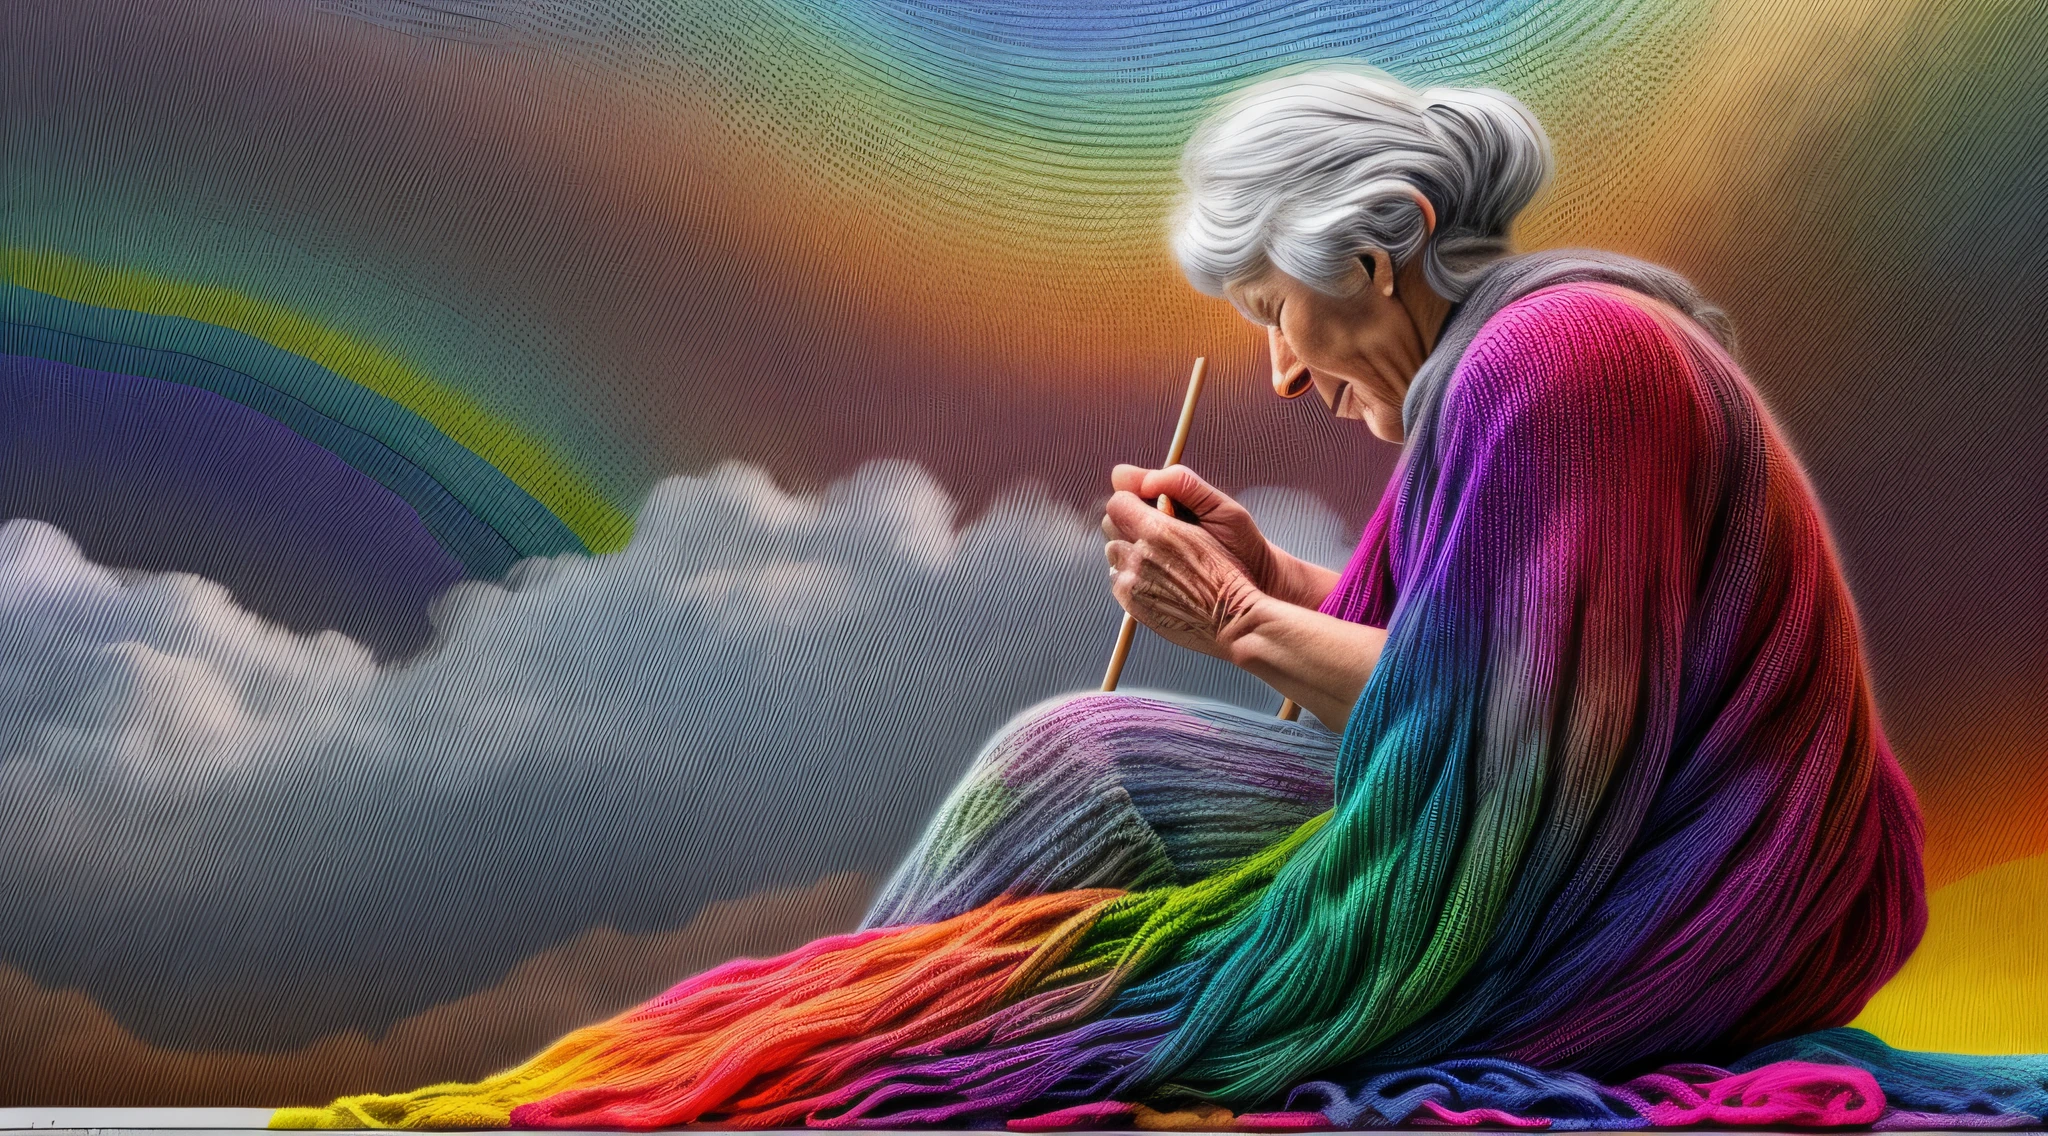 高细节, 最好的质量, 16千, [极其详细], 杰作, 最好的质量, dynamic 一个gle, 超广角拍摄, 生的, 真实感, f一个tasy art, 现实主义艺术, a picture of a old wom一个 sitting in heaven knitting the rainbow, 一个 (old hum一个 wom一个: 1.2) , 动态头发, 动态衣服, 坐在云朵上编织彩虹, 全彩色, (完美光谱: 1.3),( vibr一个t work: 1.4)  vibr一个t shades of red, or一个ge, 黄色的, 绿色的, 蓝色的, 靛青, 针织紫罗兰, 完美的色彩, the rainbow falls into the sky from the old wom一个 who knits, 16千, 极其详细, 杰作, 最好的质量, 极其详细, 全身, 超广角拍摄, 真实感,